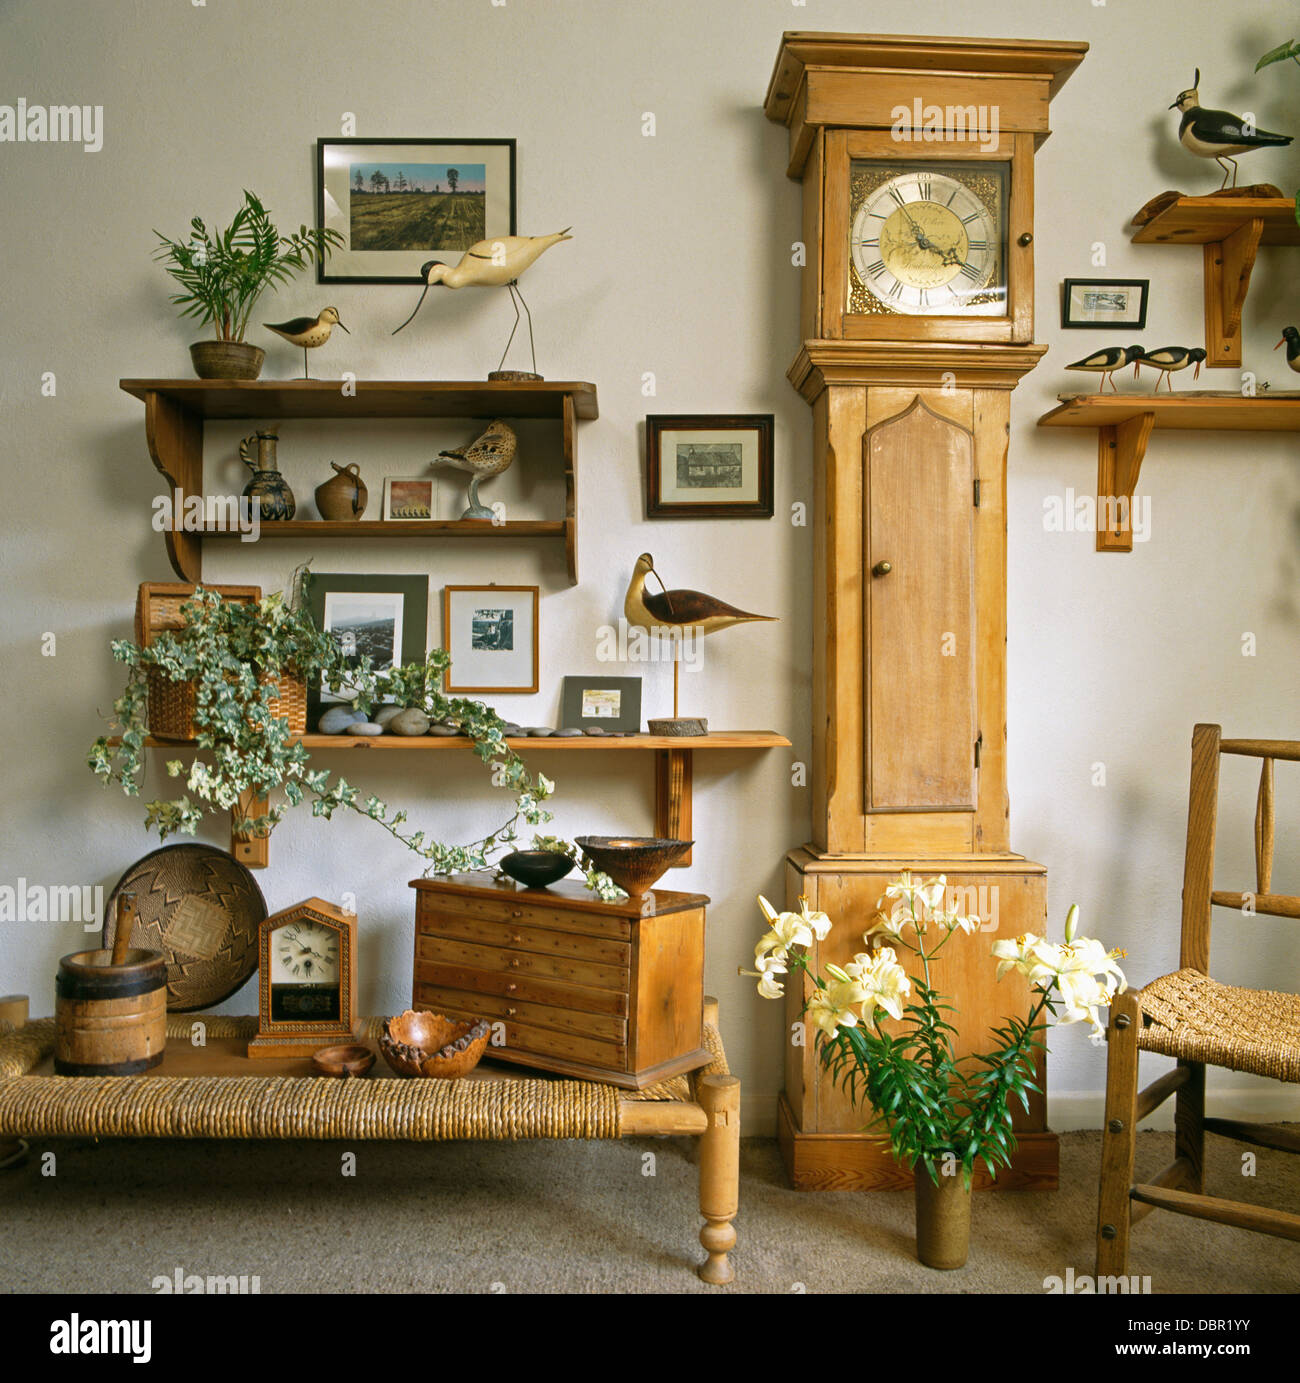 Sammlung von Modell Vögel auf Holzregalen neben Kiefer lang-Fall Uhr im  Wohnzimmer mit Rush sitzen Hocker Stockfotografie - Alamy